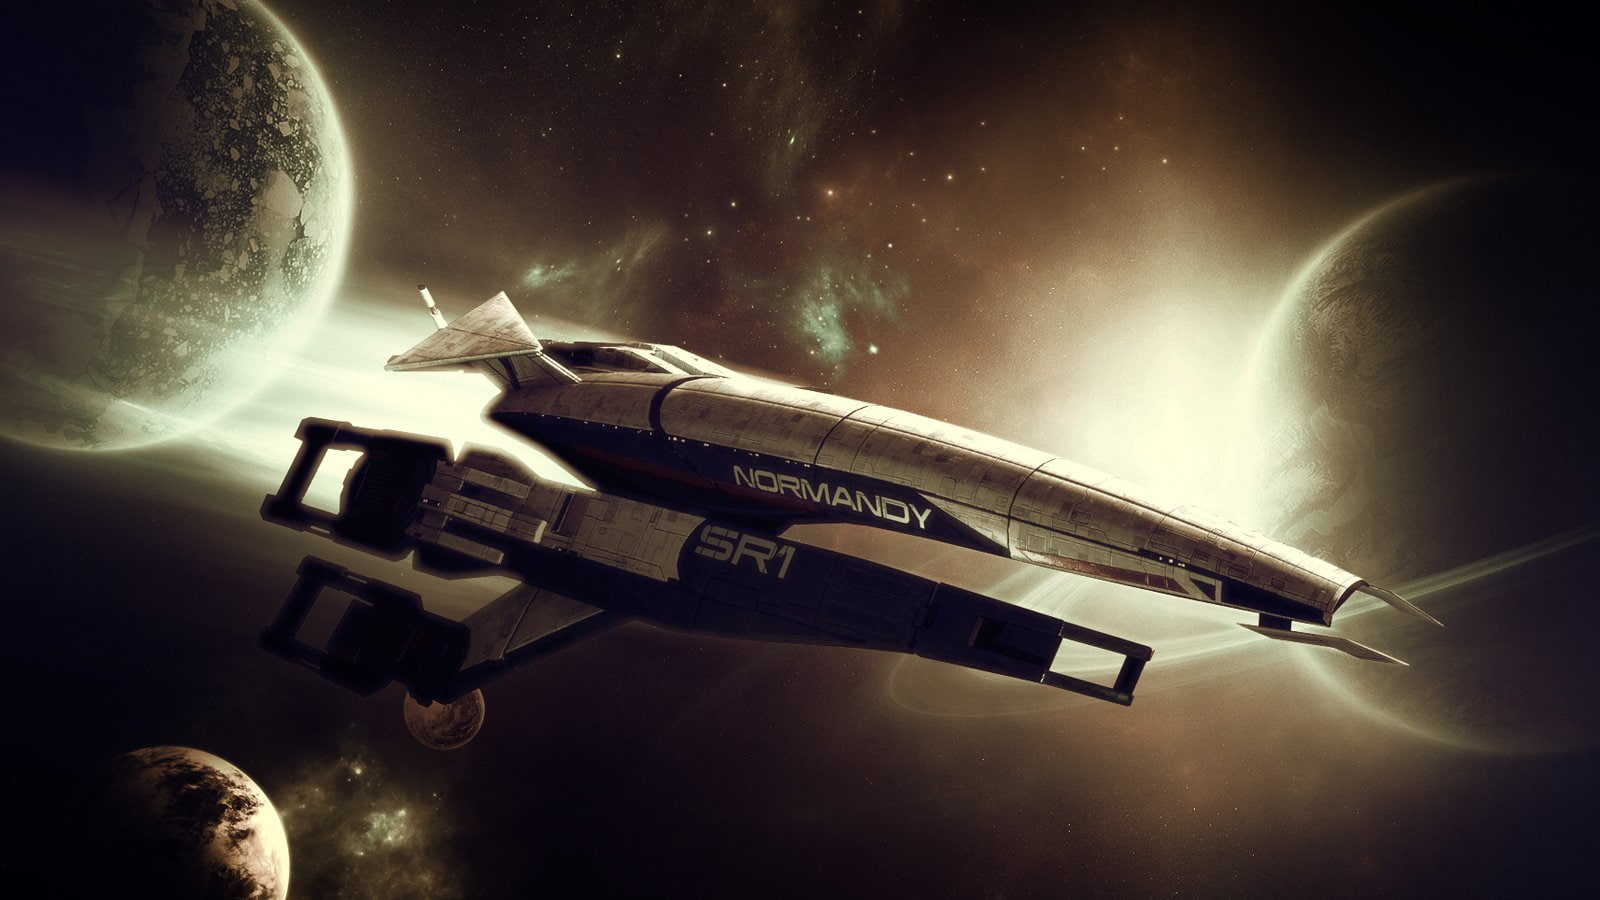 Mass Effect, Normandy SR-1